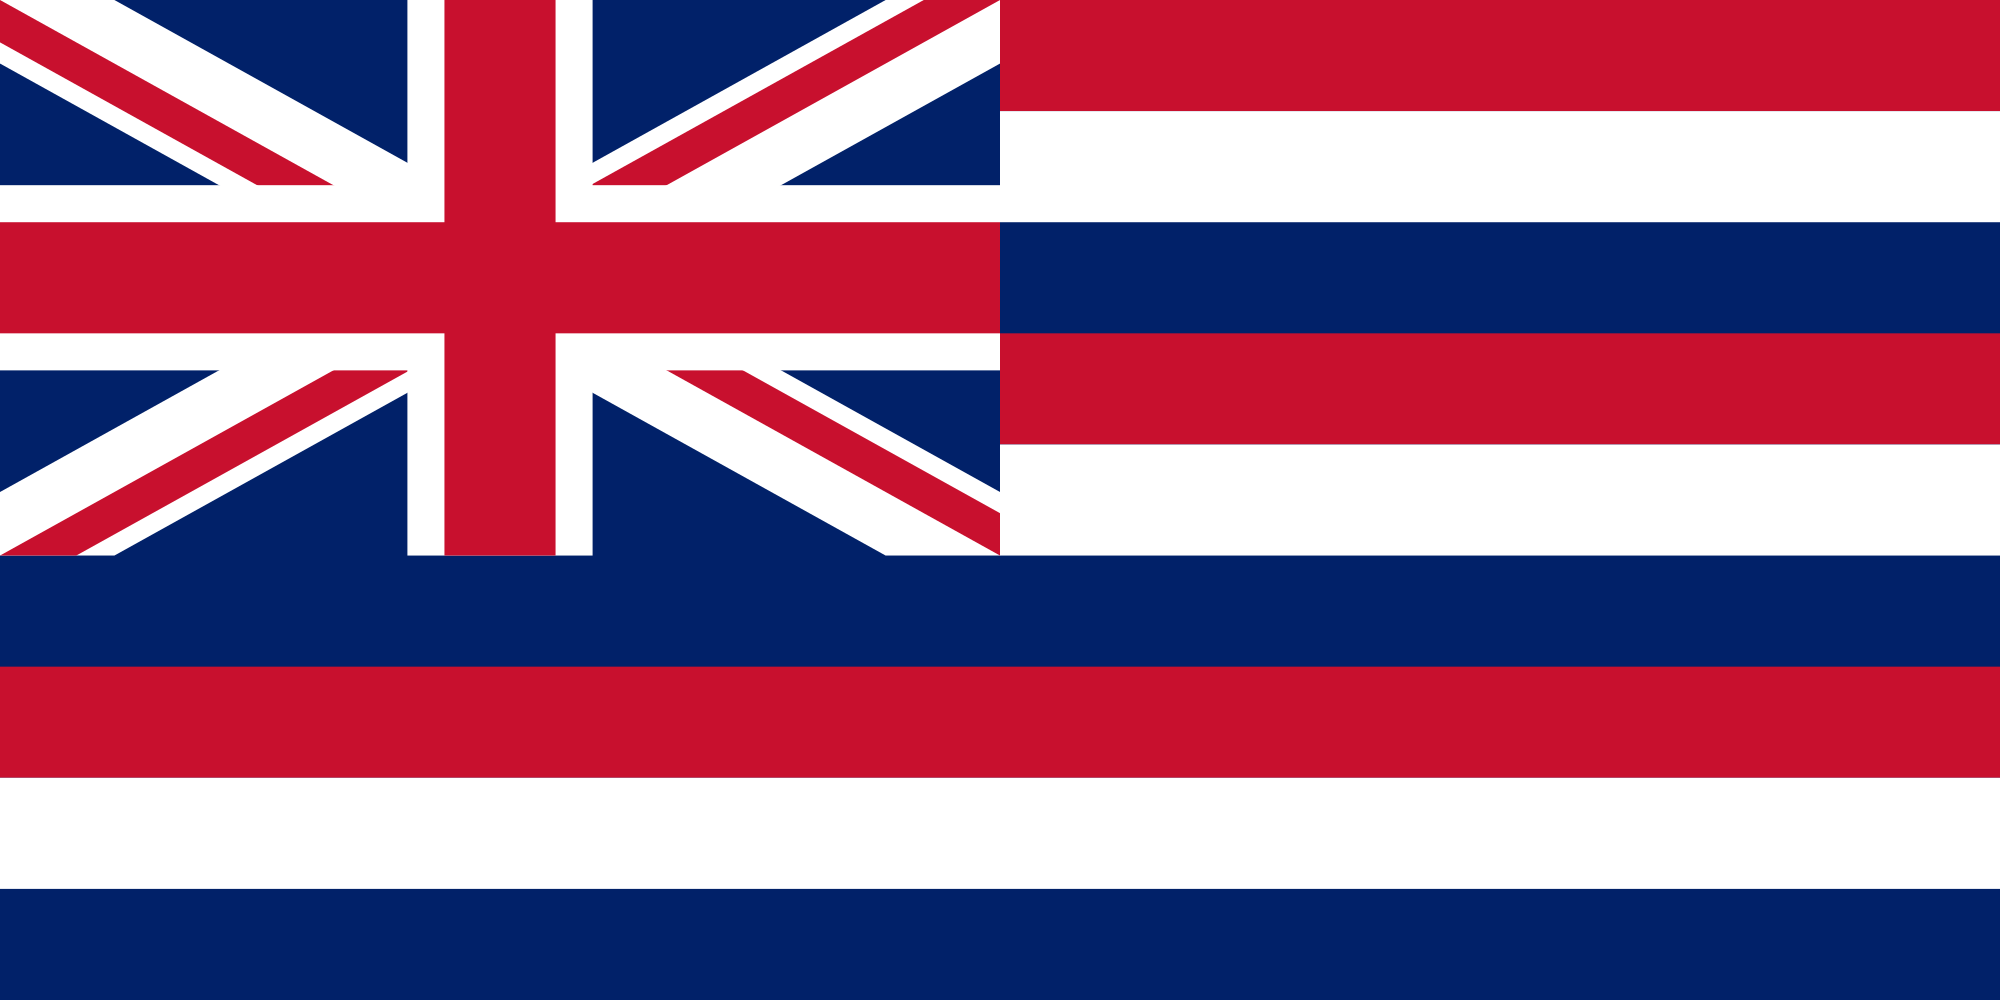 Islands Flags Quiz - By matthijsbp